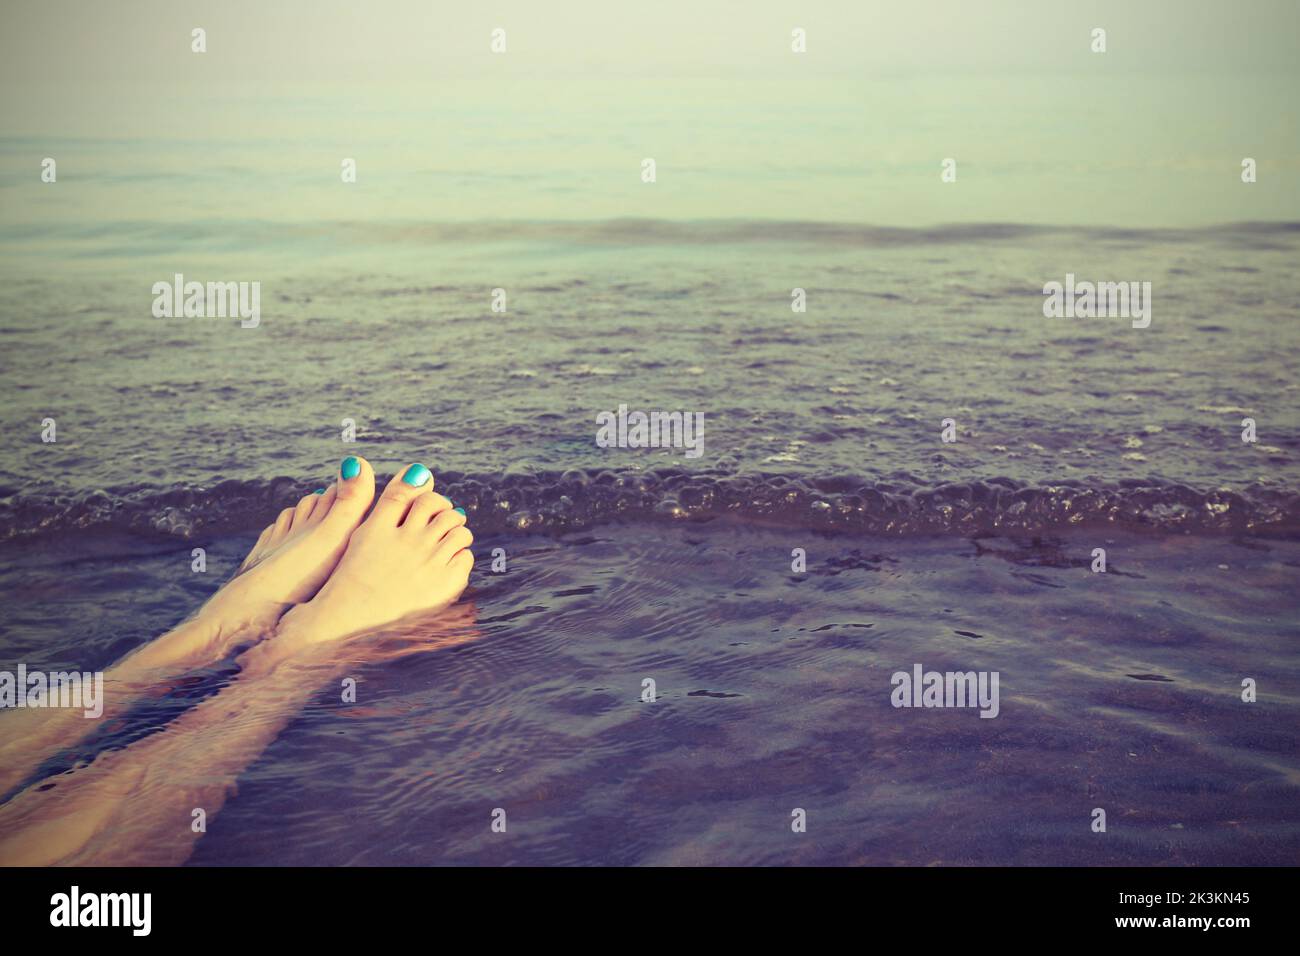 pies con uñas esmaltadas de la chica en el mar y un efecto vintage en el verano Foto de stock